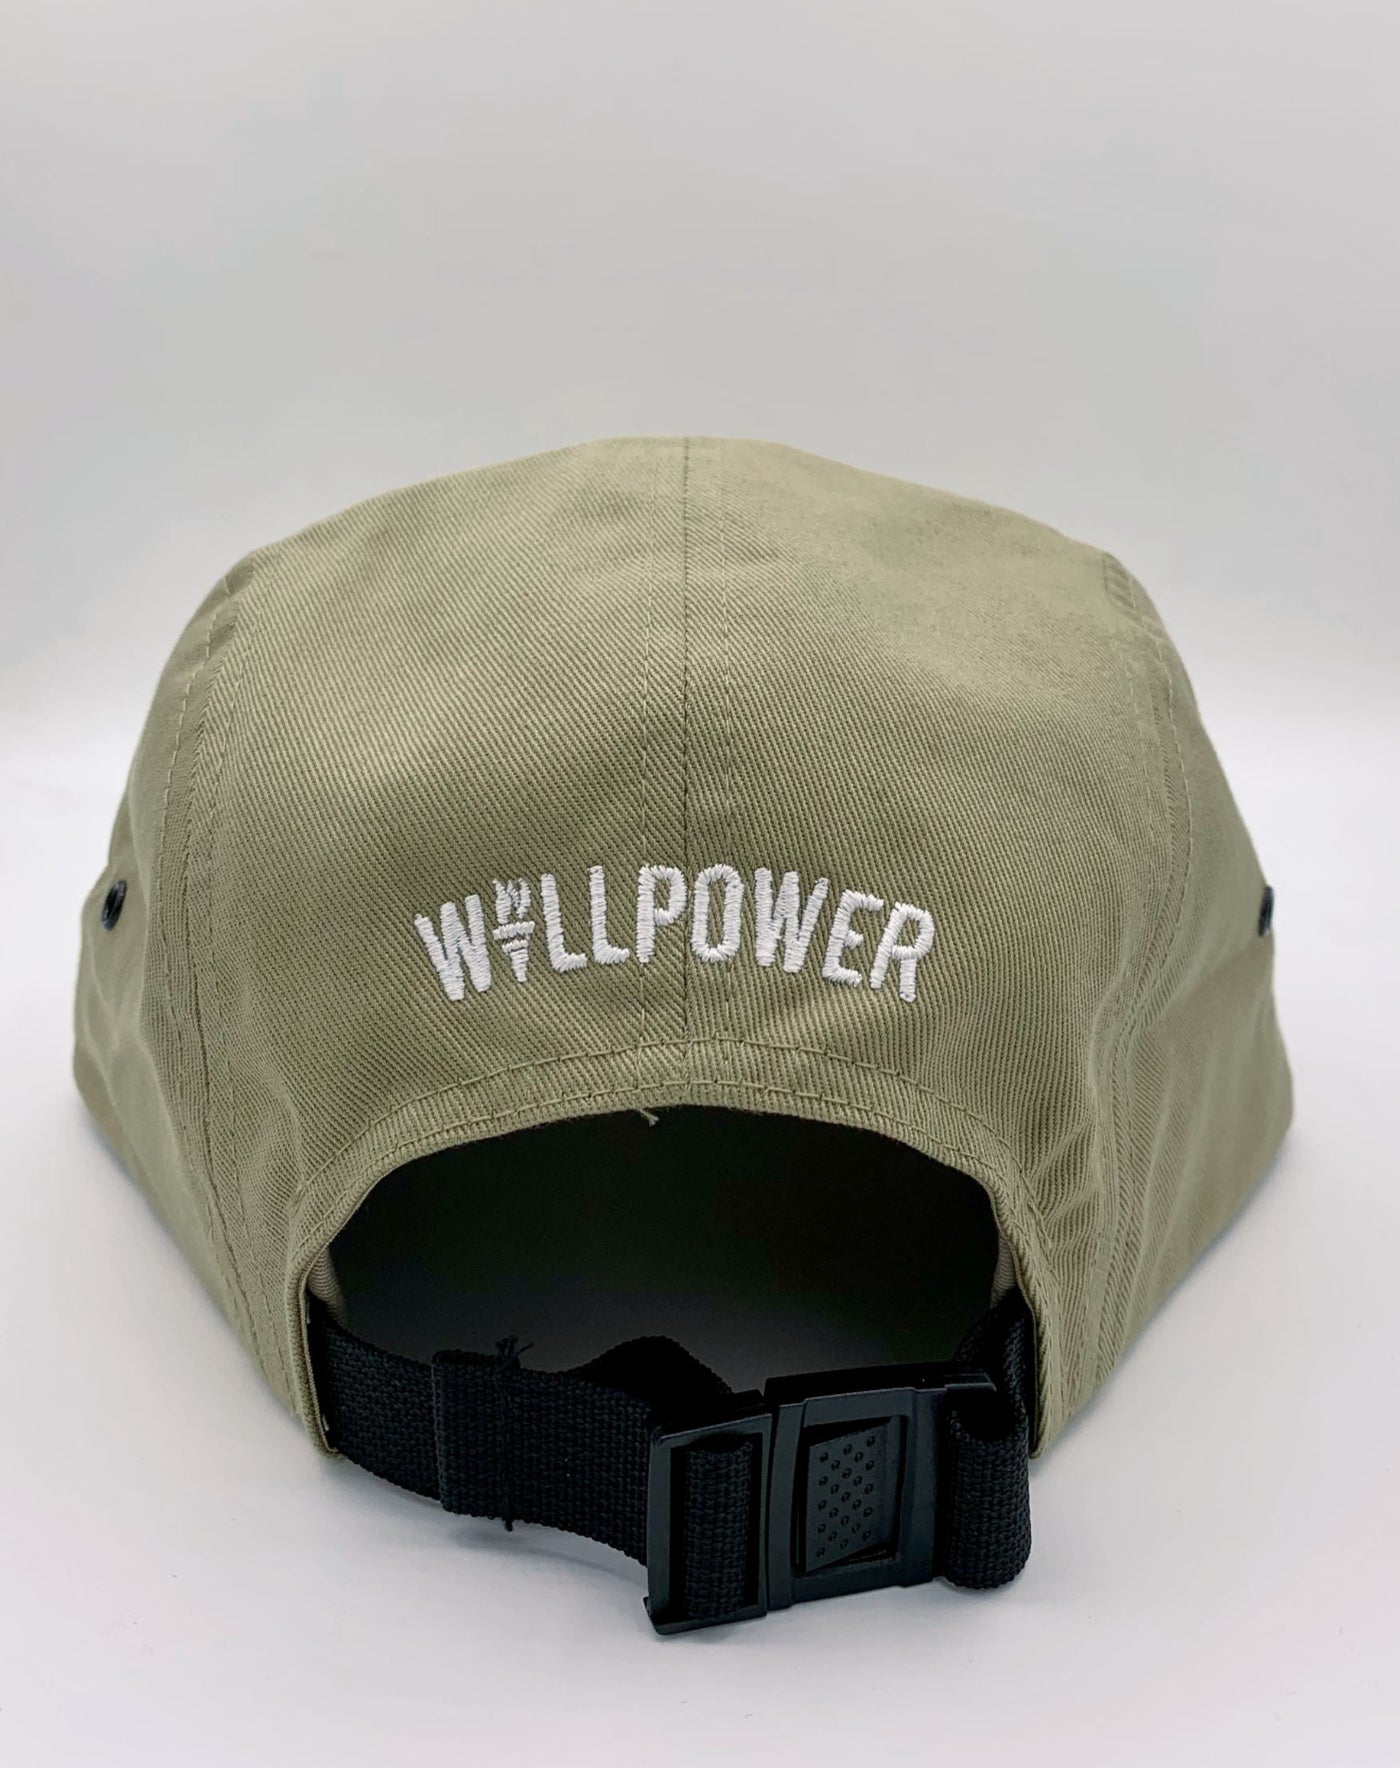 Willpower Jockey Cap (Khaki)